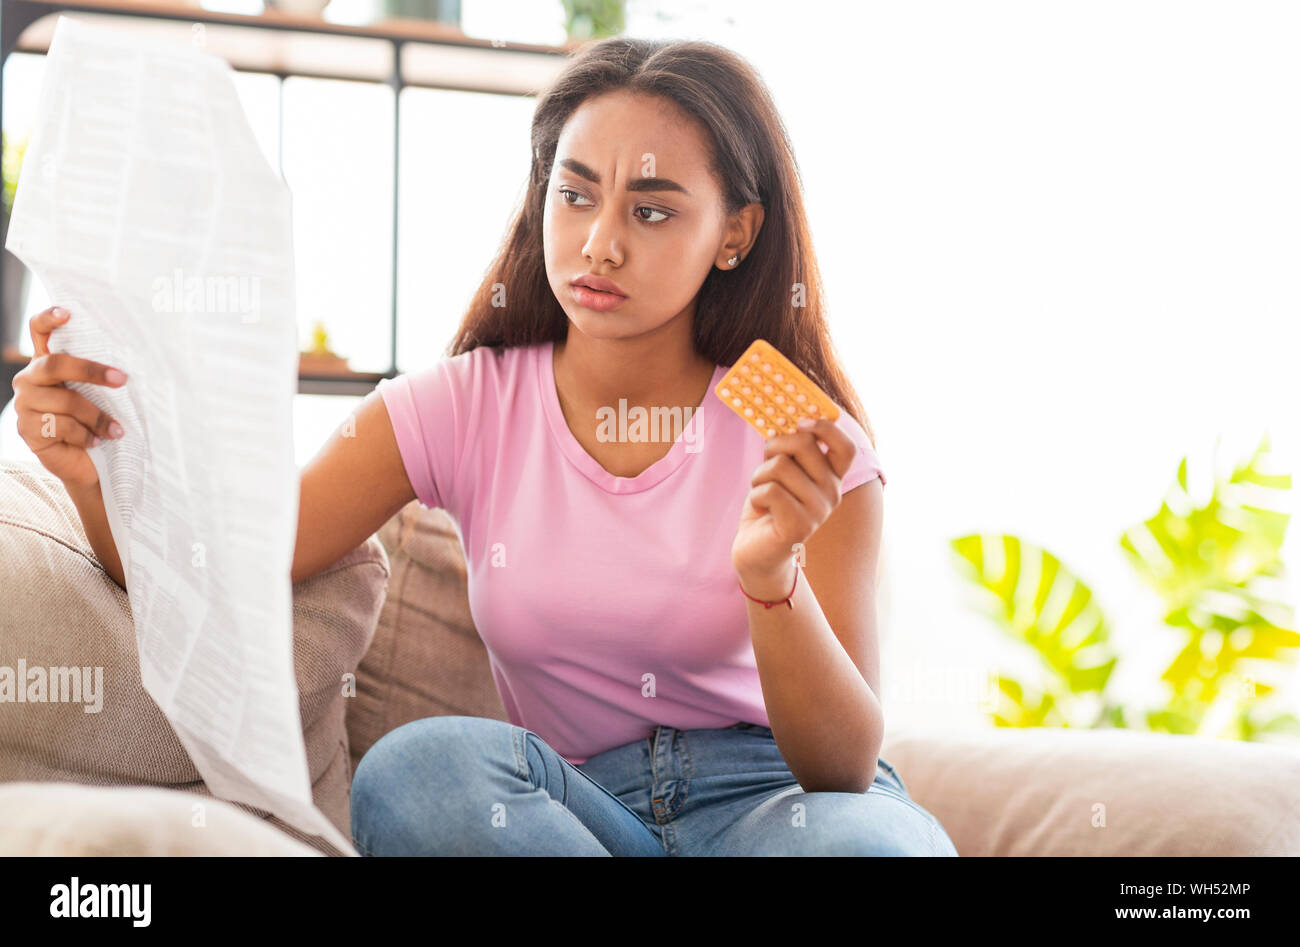 Choqué african american girl reading leaflet avant de prendre des pilules contraceptives Banque D'Images